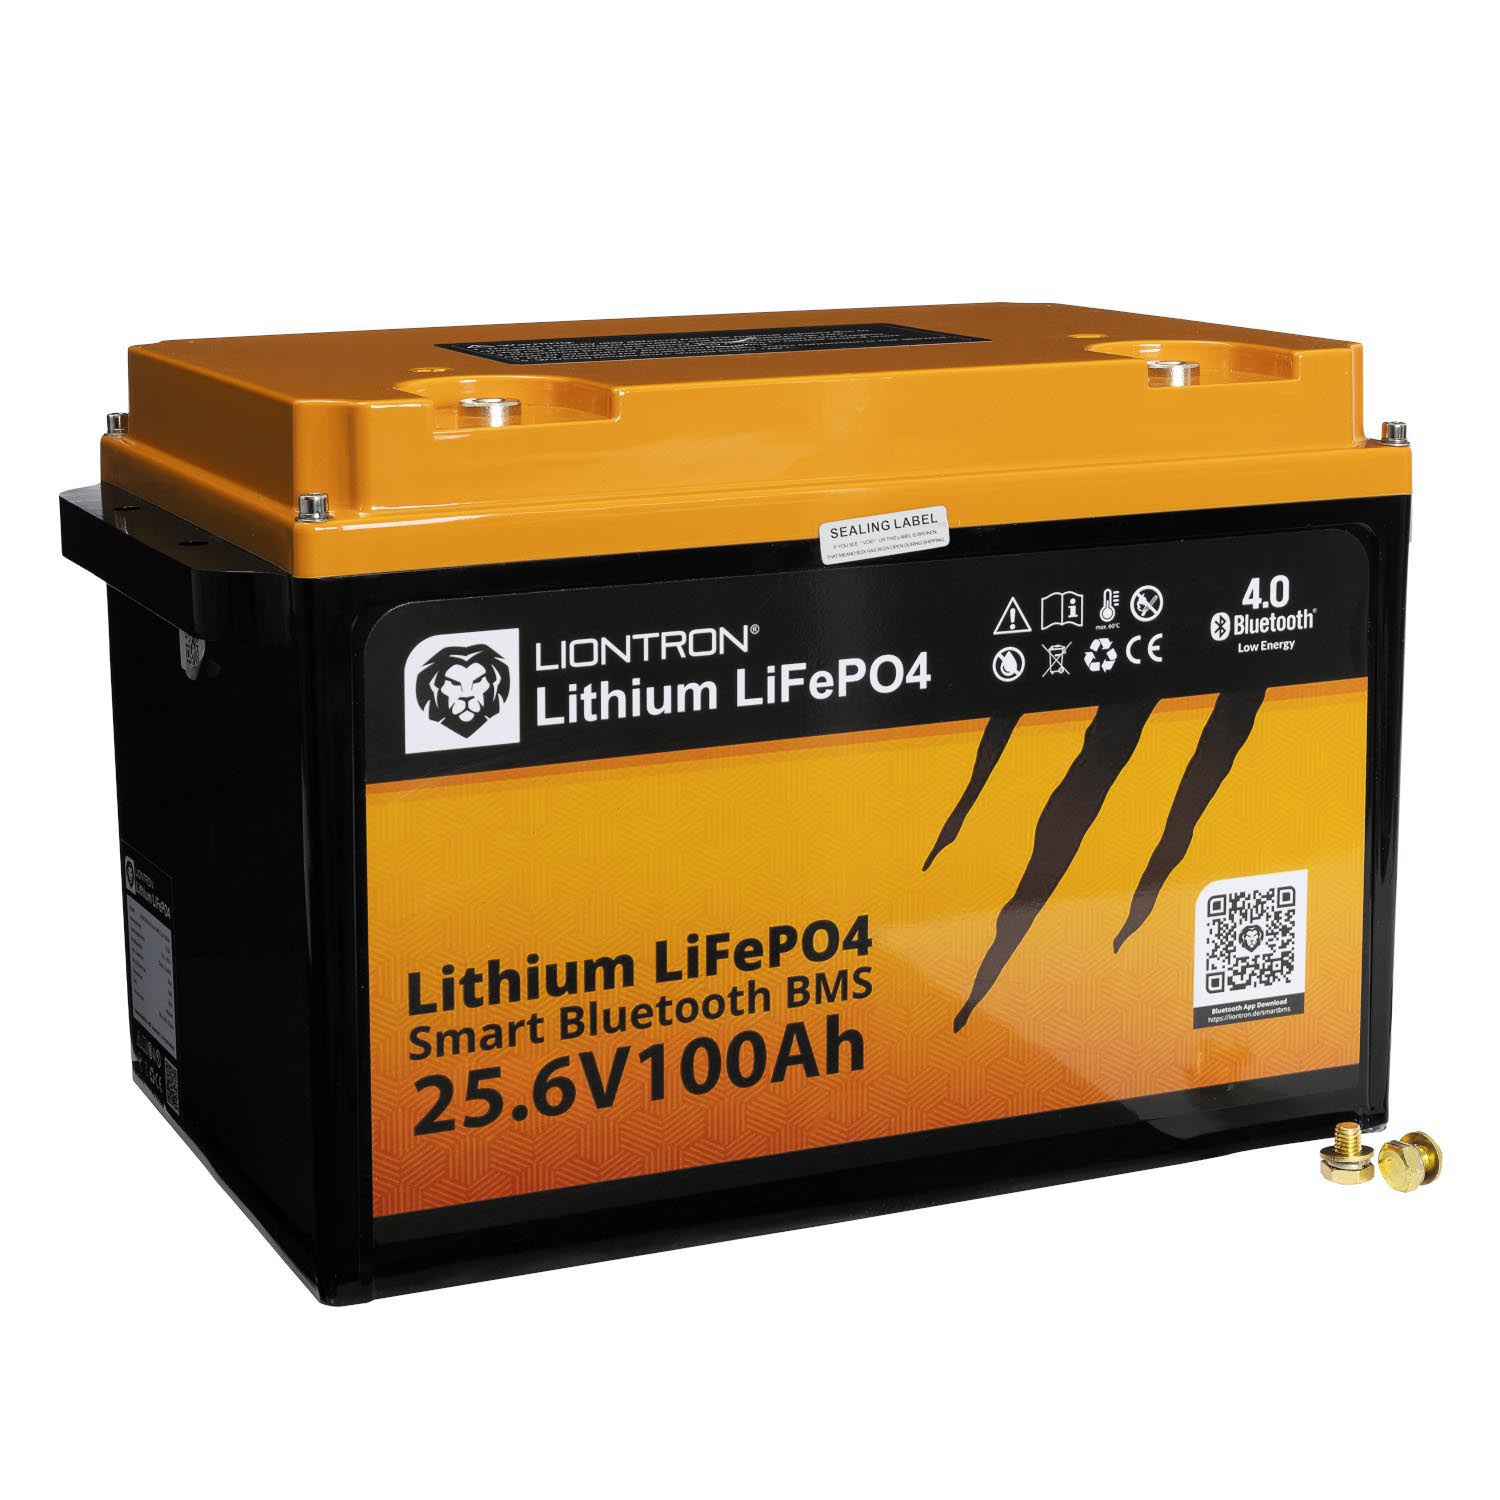 Startseite - LIONTRON Lithium Batterien